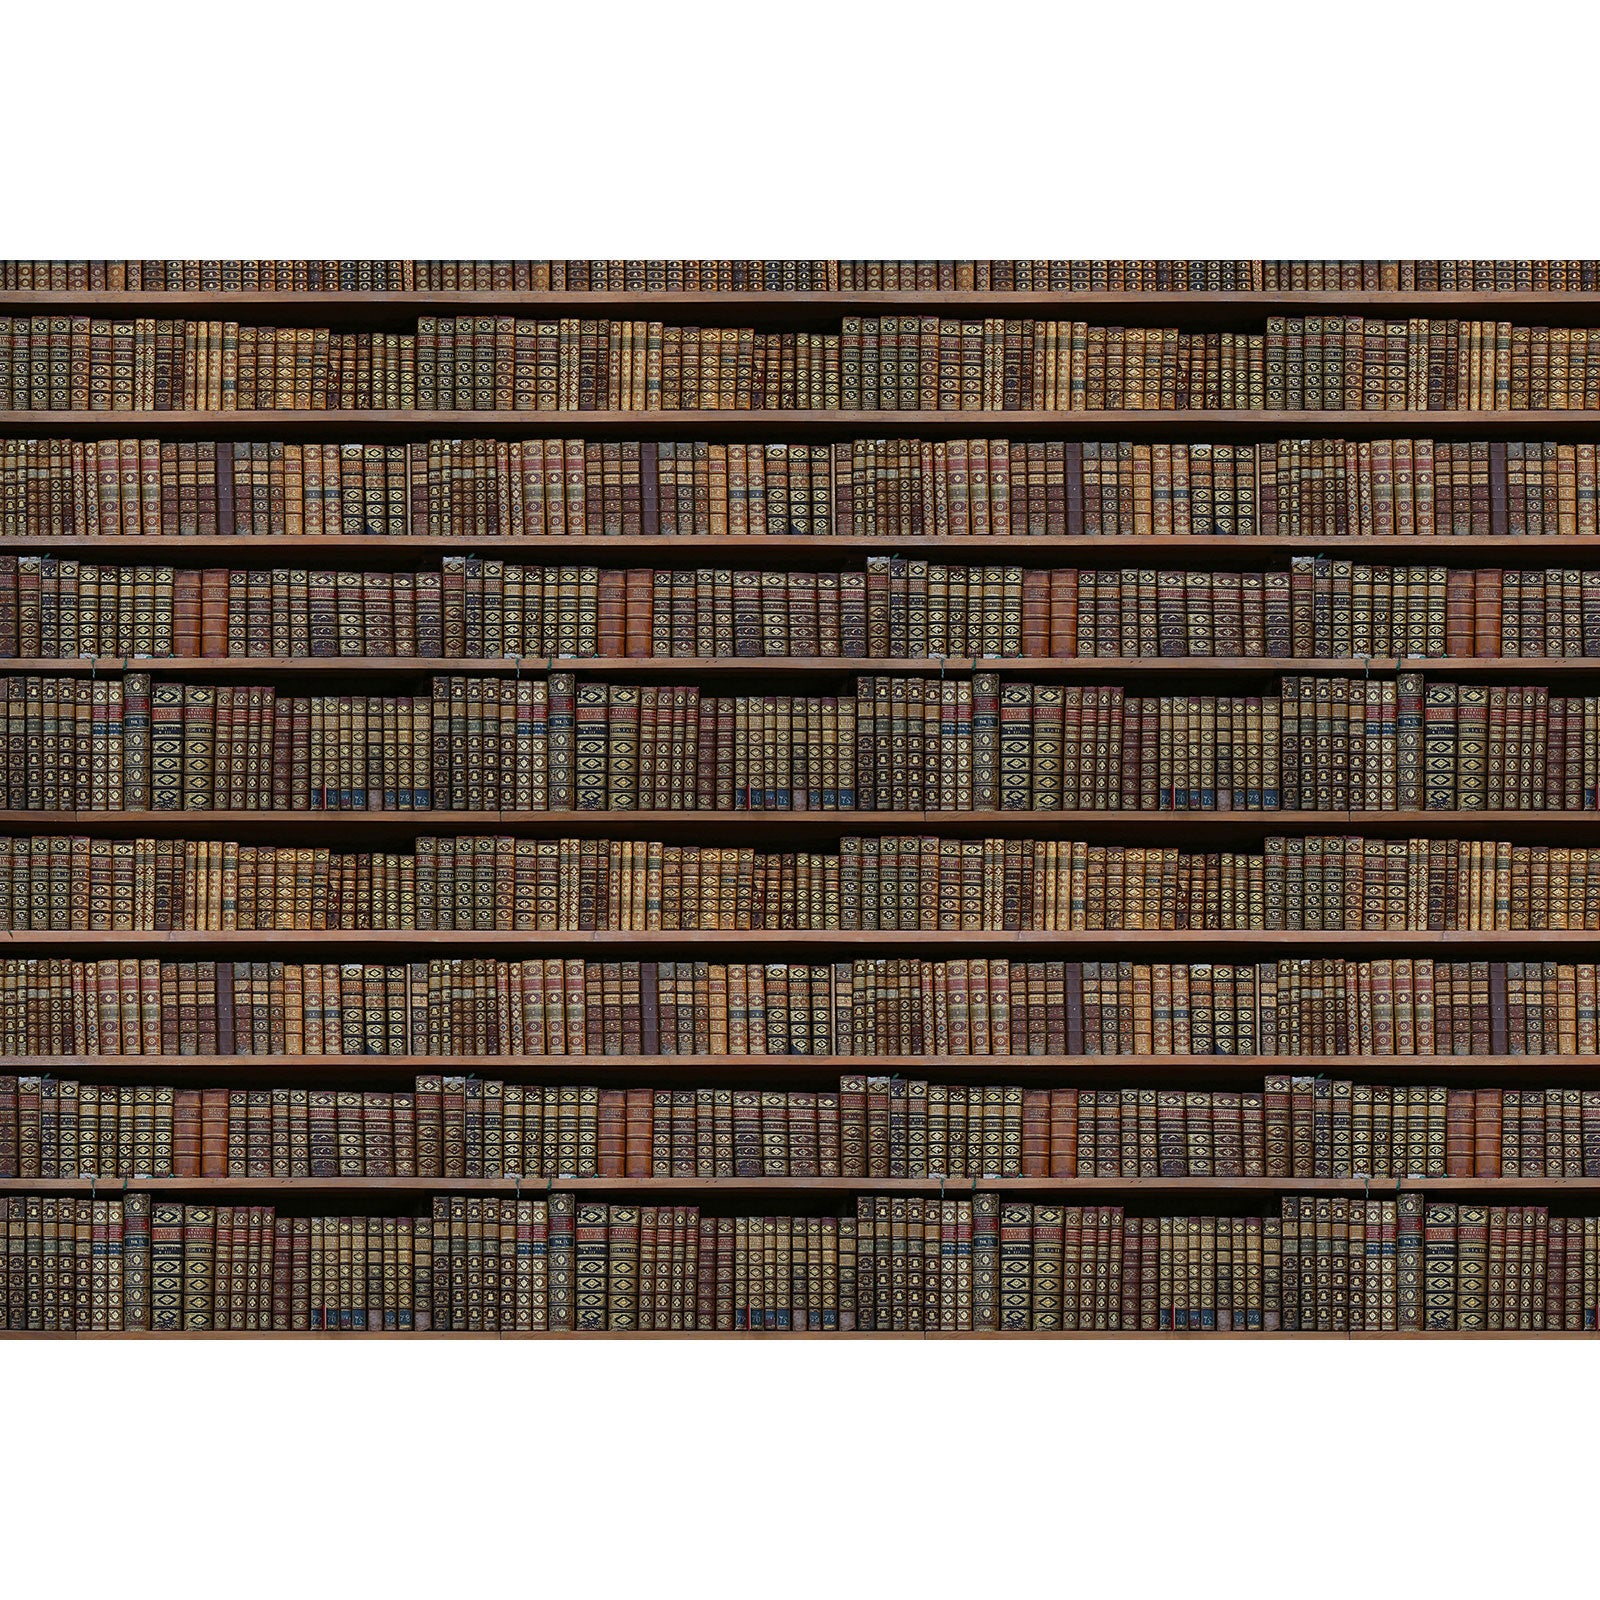 Papier peint panoramique - Imitation bibliothèque - Livres - 510cm x 280cm  (L x H)